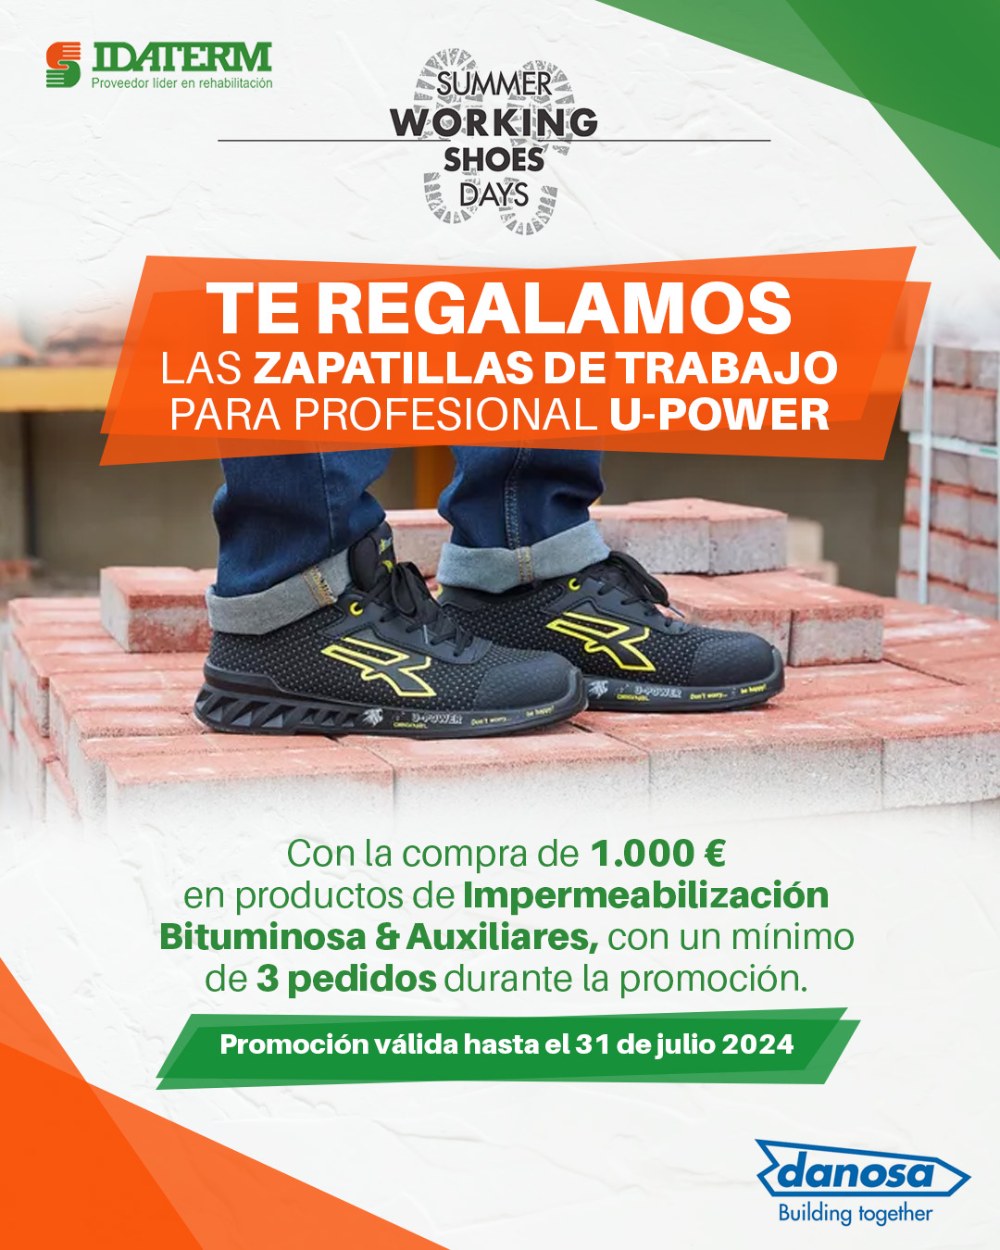 Zapatillas de trabajo U-POWER con promoción de productos de impermeabilización bituminosa en Idaterm